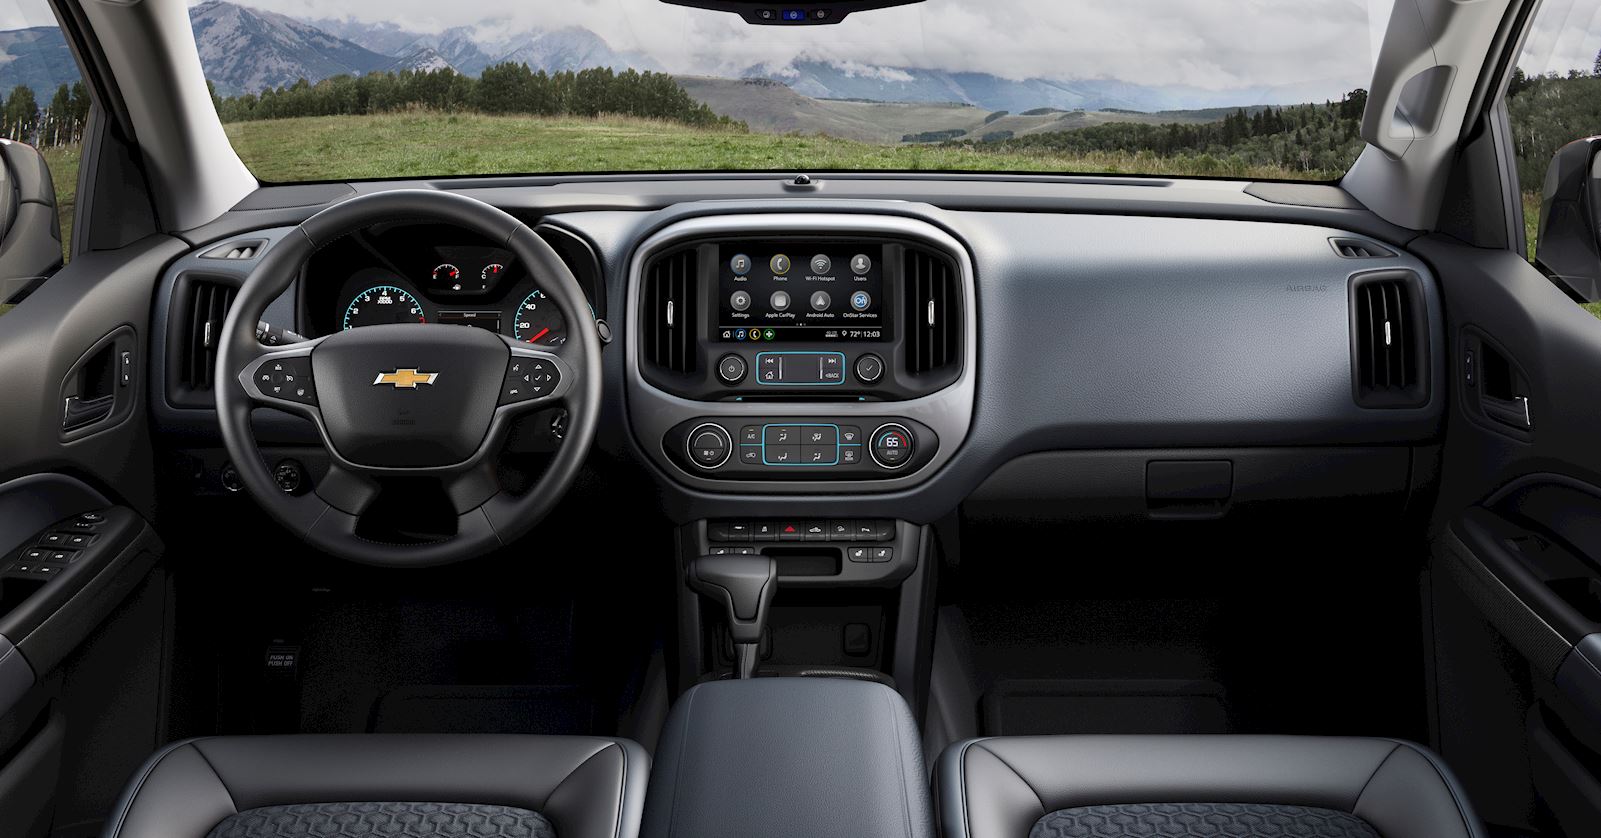 2021 Chevrolet Colorado Interior Dashboard